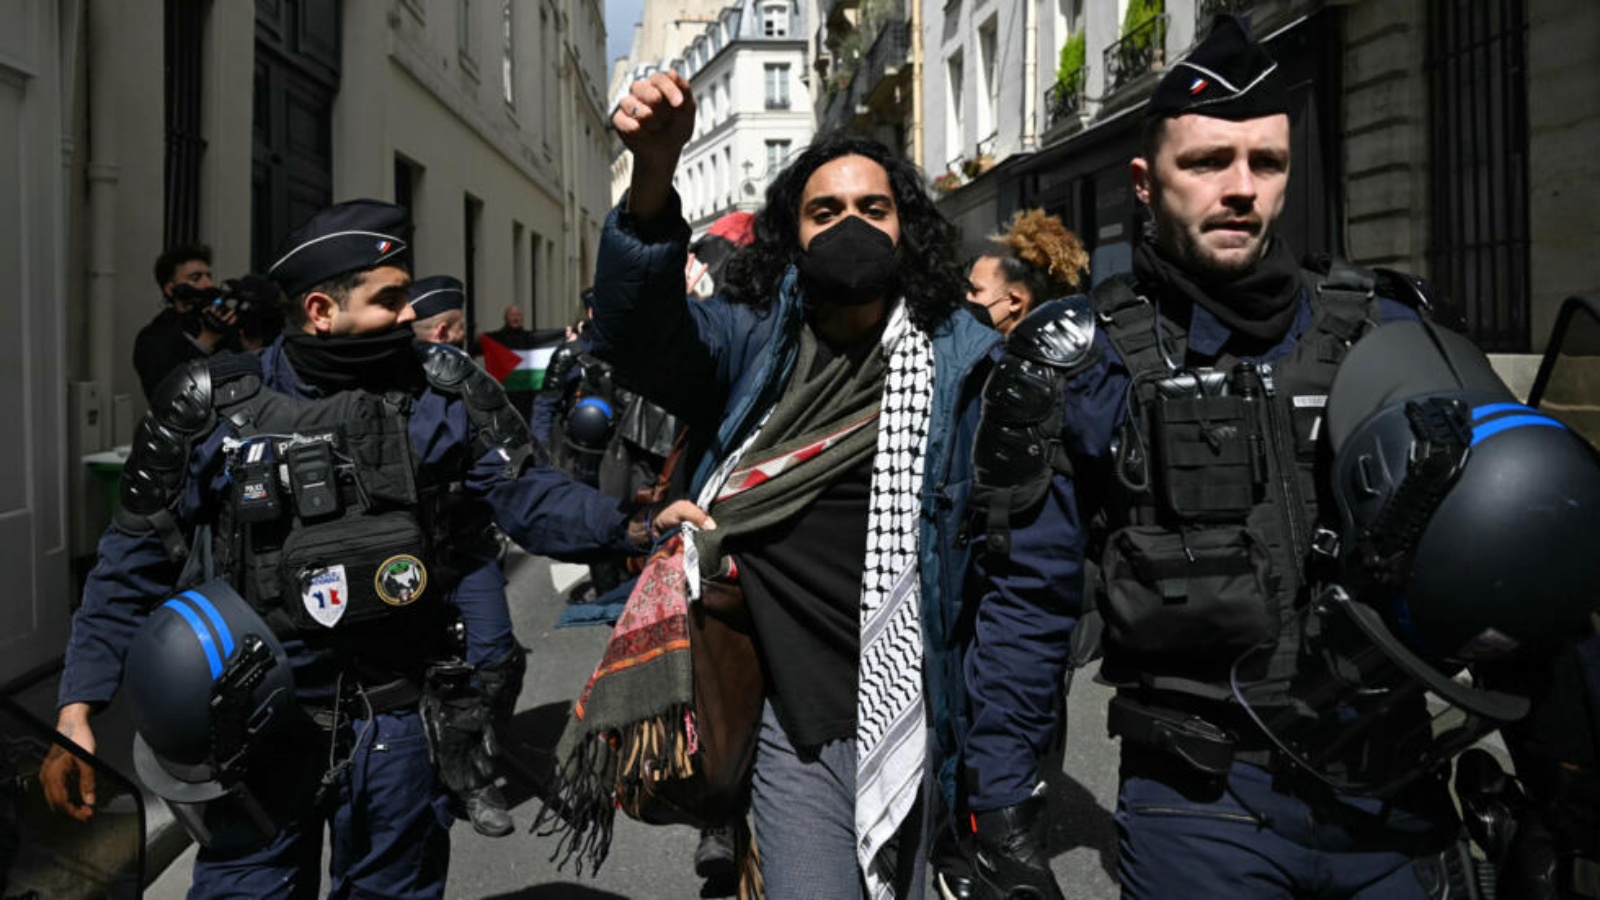 عناصر من الشرطة الفرنسية يقتادون أحد المعتصمين تضامنا مع الفلسطينيين في معهد العلوم السياسية في باريس في الثالث من أيار/مايو 2024 عناصر من الشرطة الفرنسية يقتادون أحد المعتصمين تضامنا مع الفلسطينيين في معهد العلوم السياسية في باريس في الثالث من أيار (مايو) 2024 